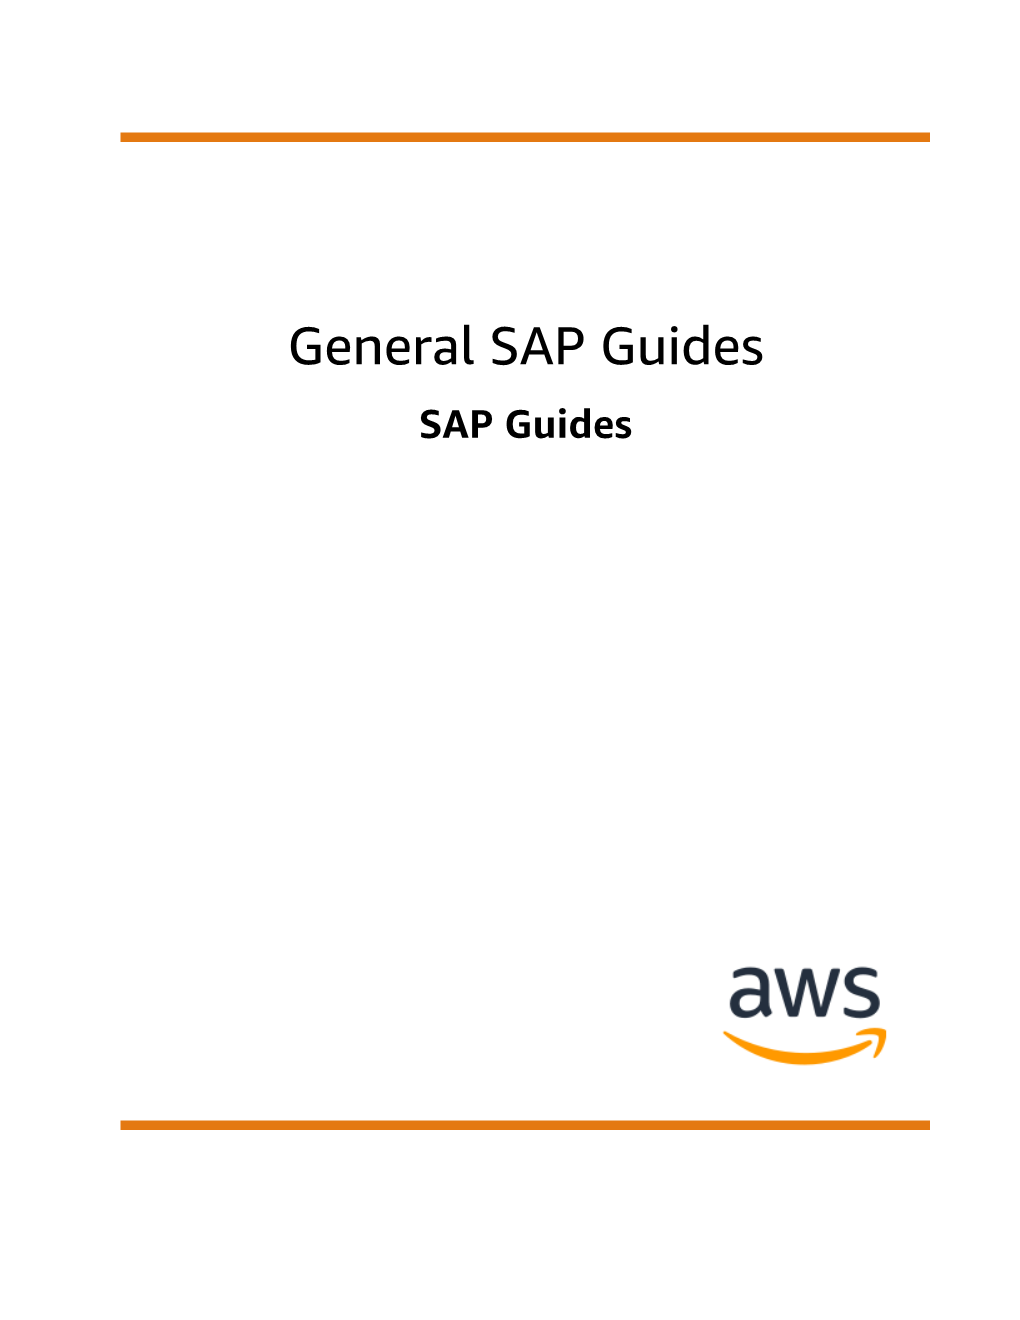 General SAP Guides SAP Guides General SAP Guides SAP Guides